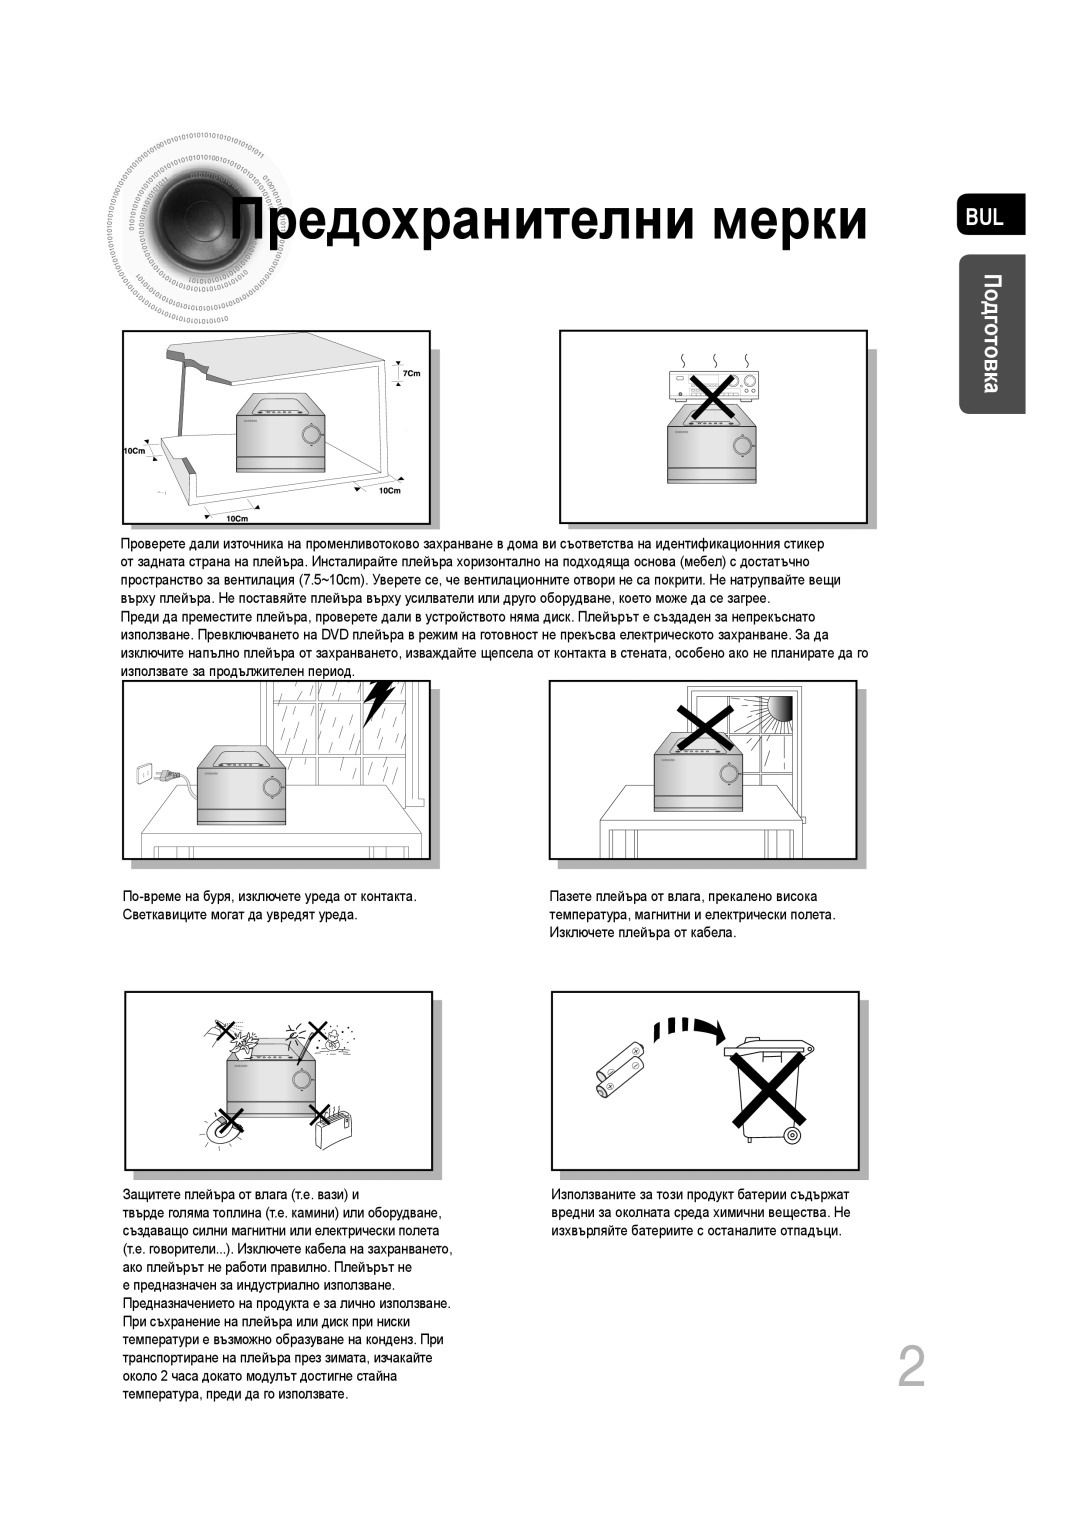 Samsung MM-C330D/EDC manual Предохранителни мерки, Подготовка 